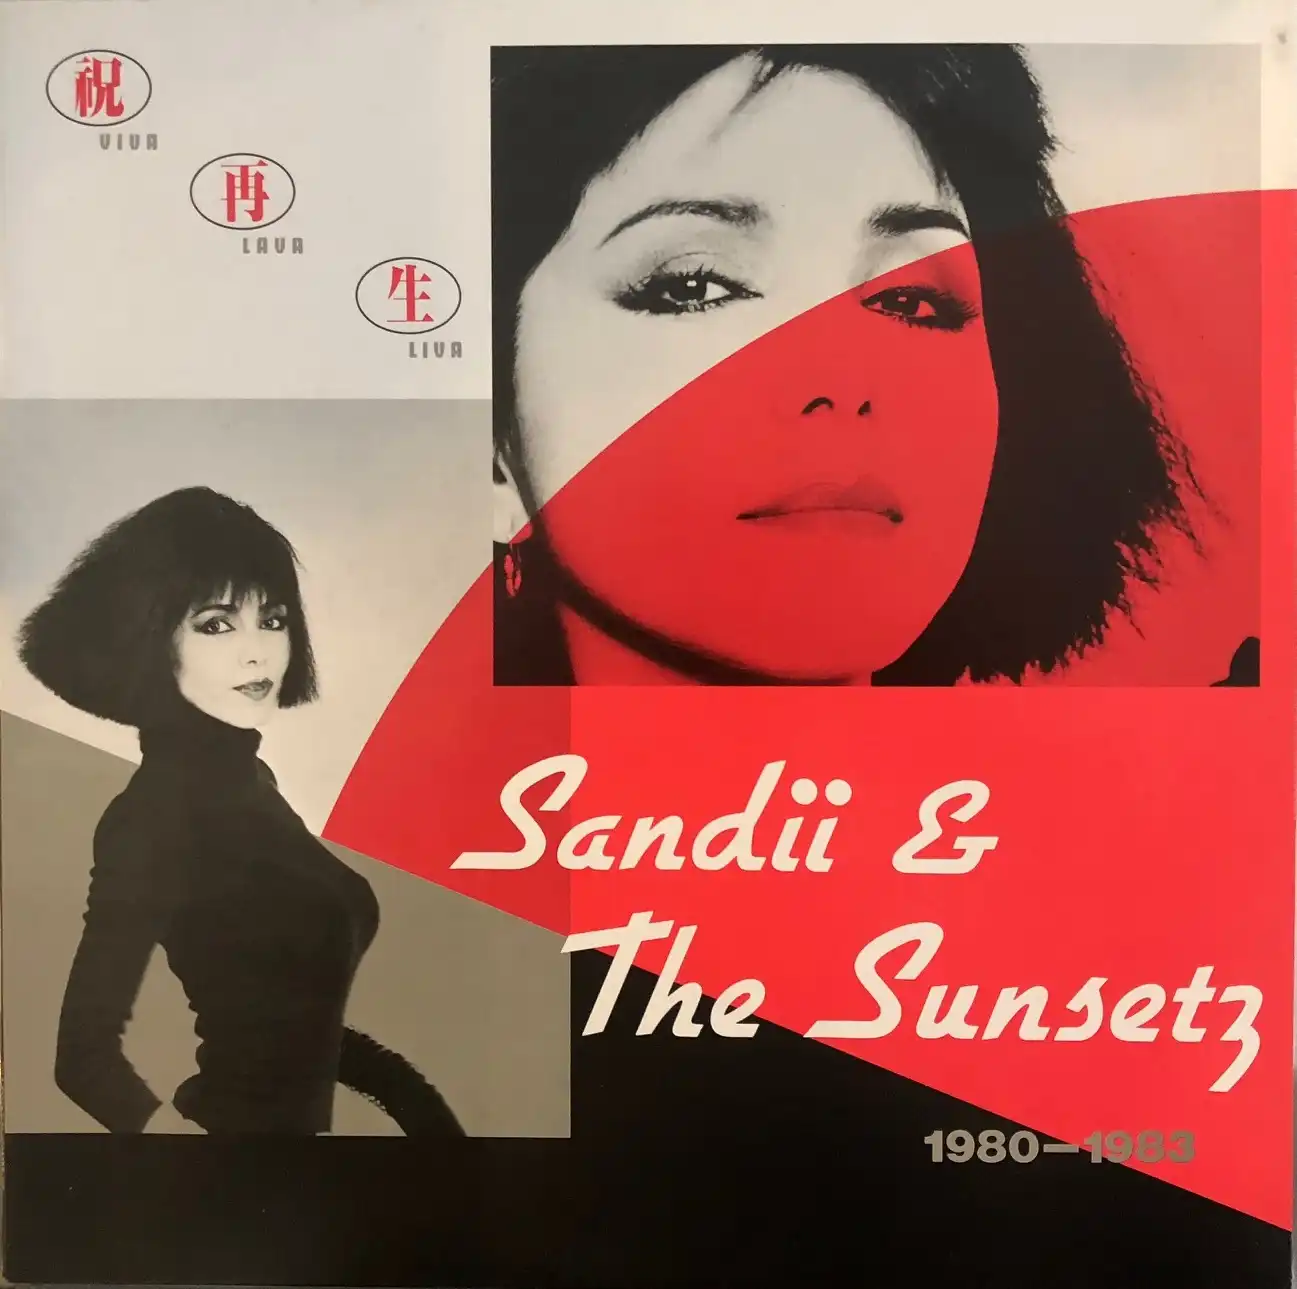 SANDI & THE SUNSETZ / VIVA LAVA LIVA